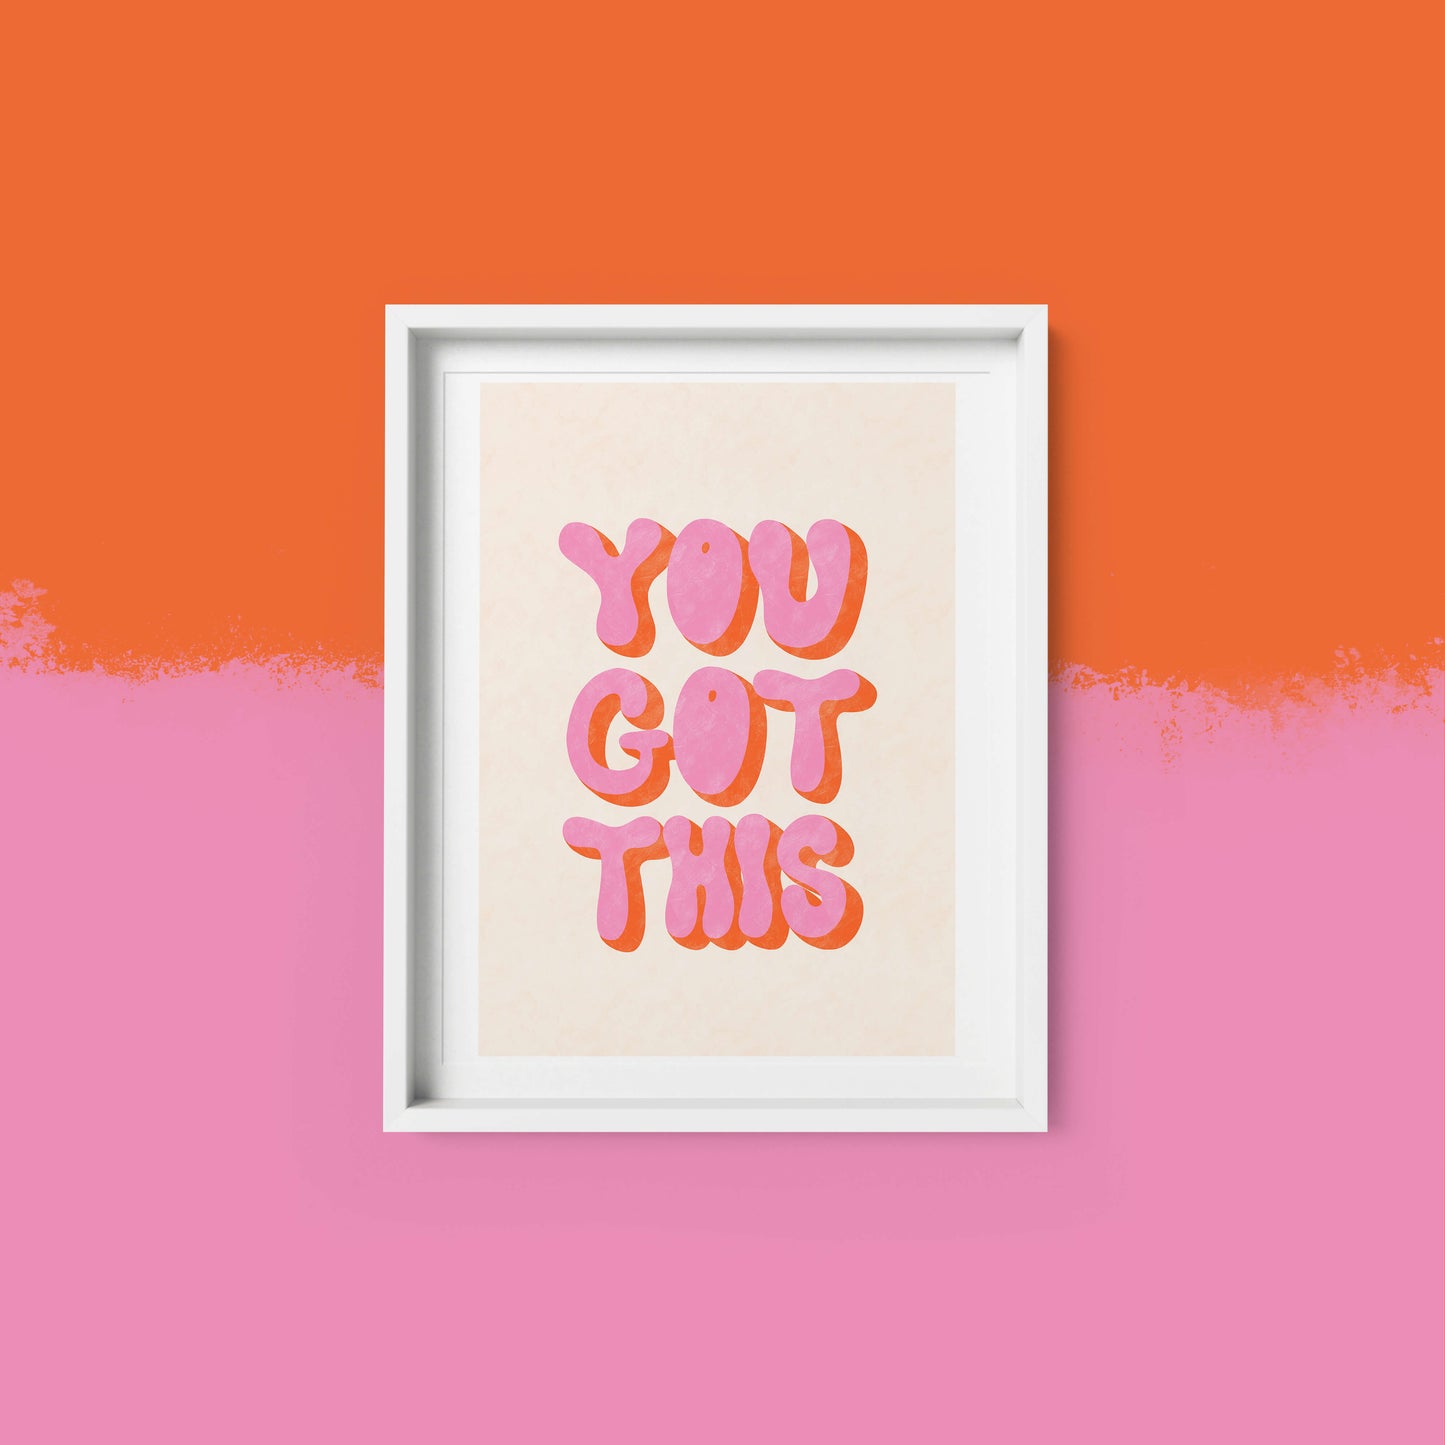 You Got This - Art Print | Home Decor | Office Wall Art